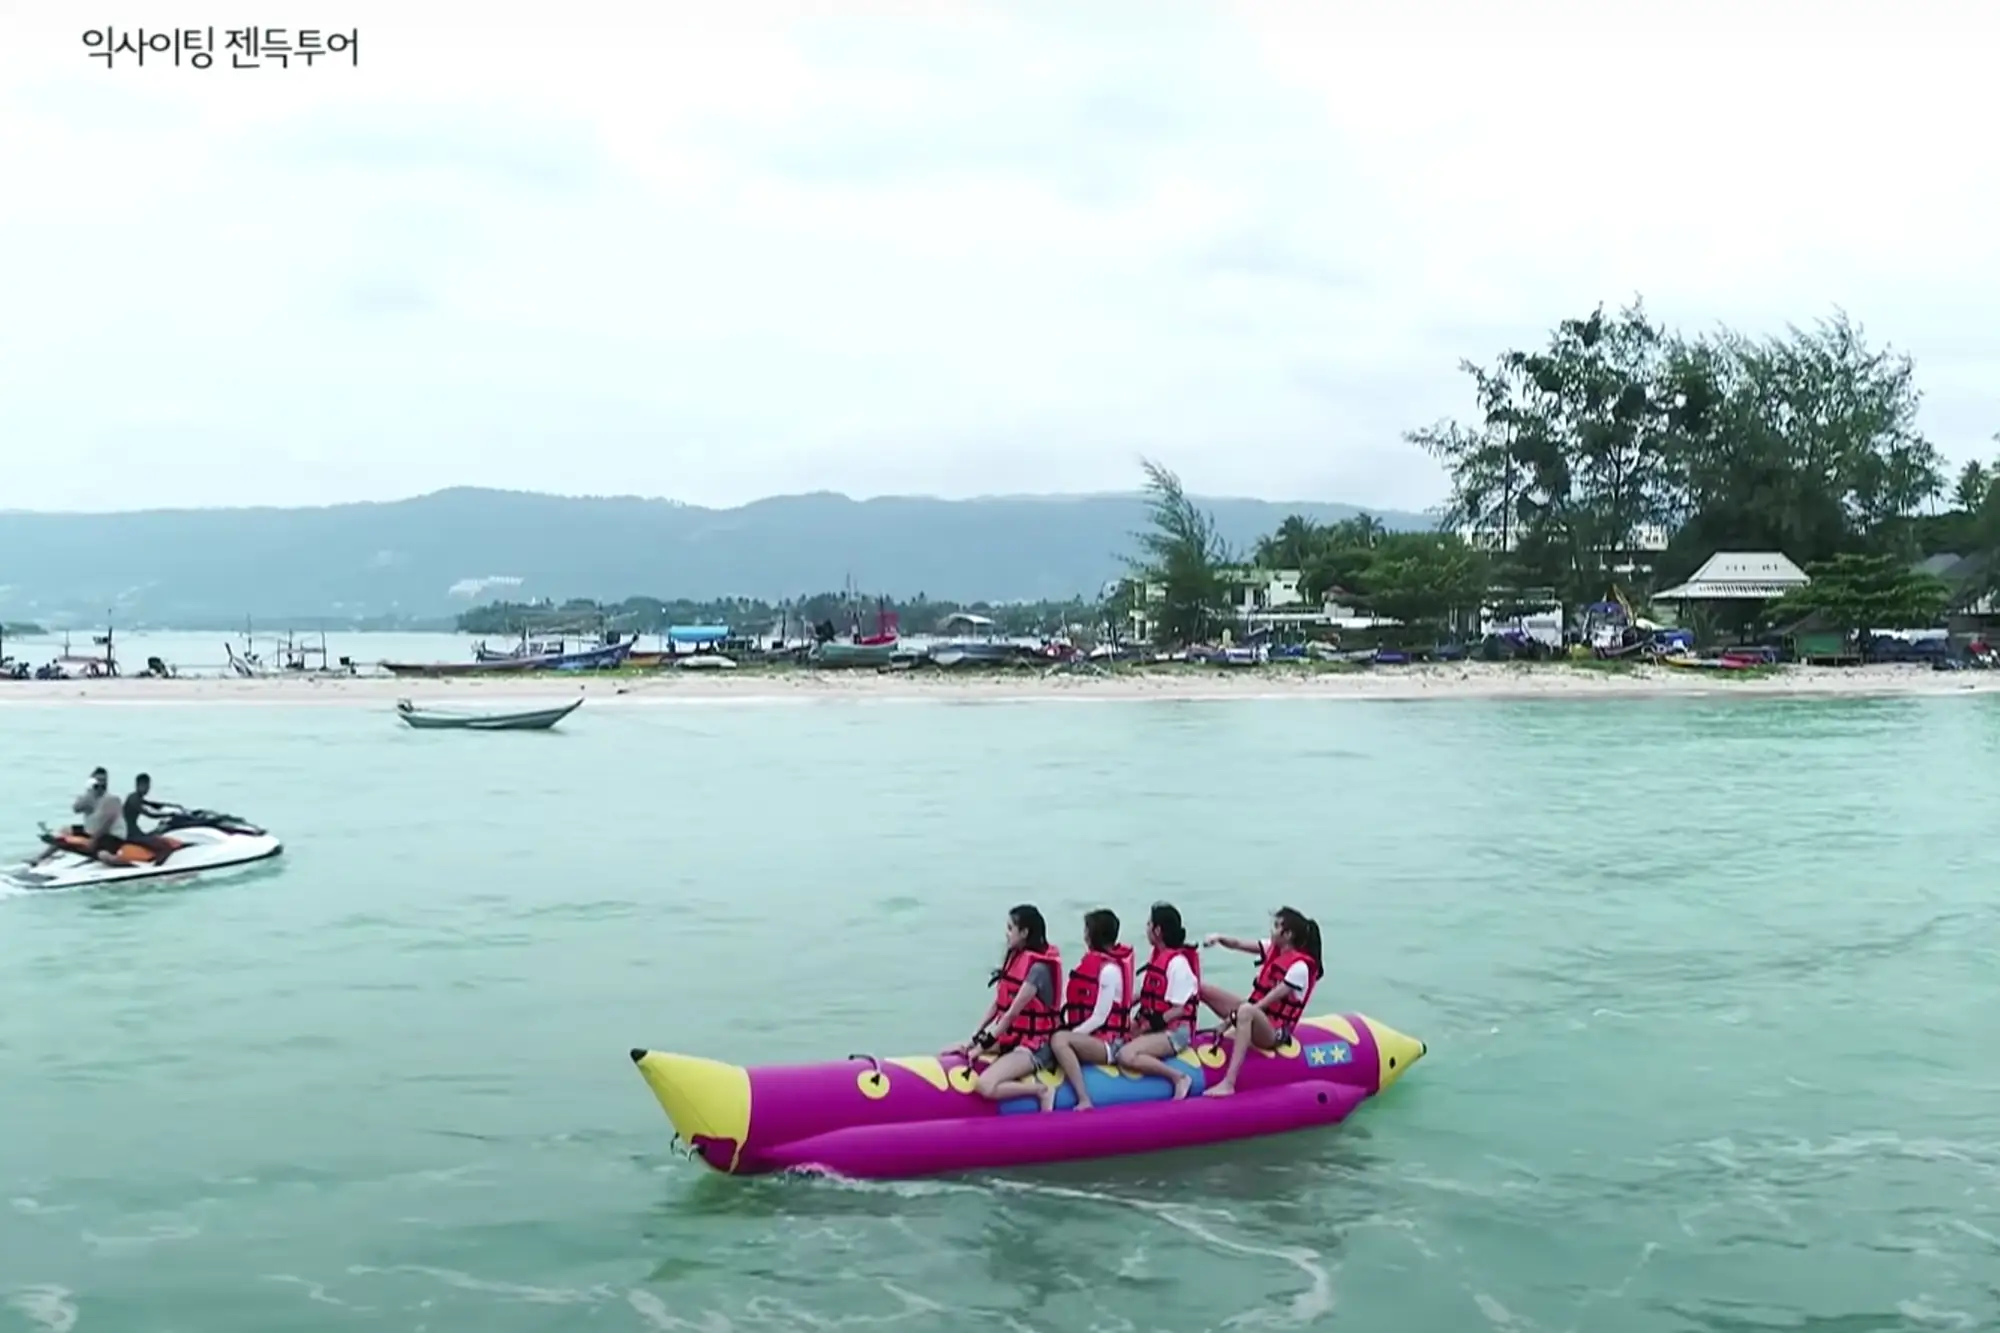 在苏梅岛，可以进行多样的水上活动，如考验力量速度的水上摩托、刺激而惬意的滑翔伞/拖拽伞、自由穿梭碧海的香蕉船等（Blackpink House影片截图）